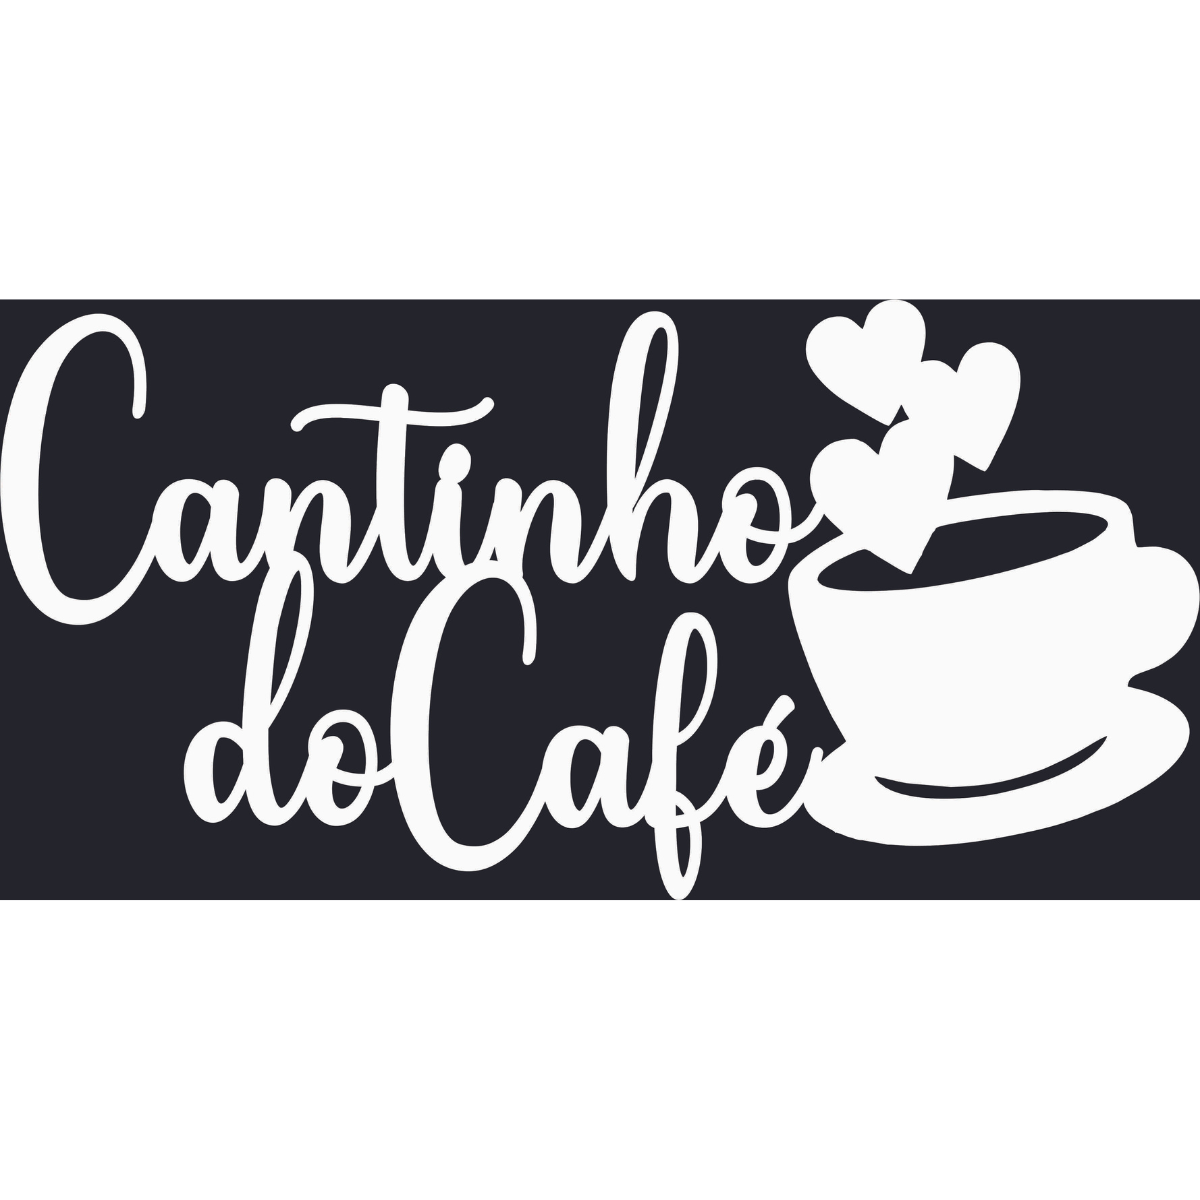 Cantinho do Cafe - Xícara - Decorativo - MDF - Branco - Plaquinha Buffet cozinha - 15x30cm